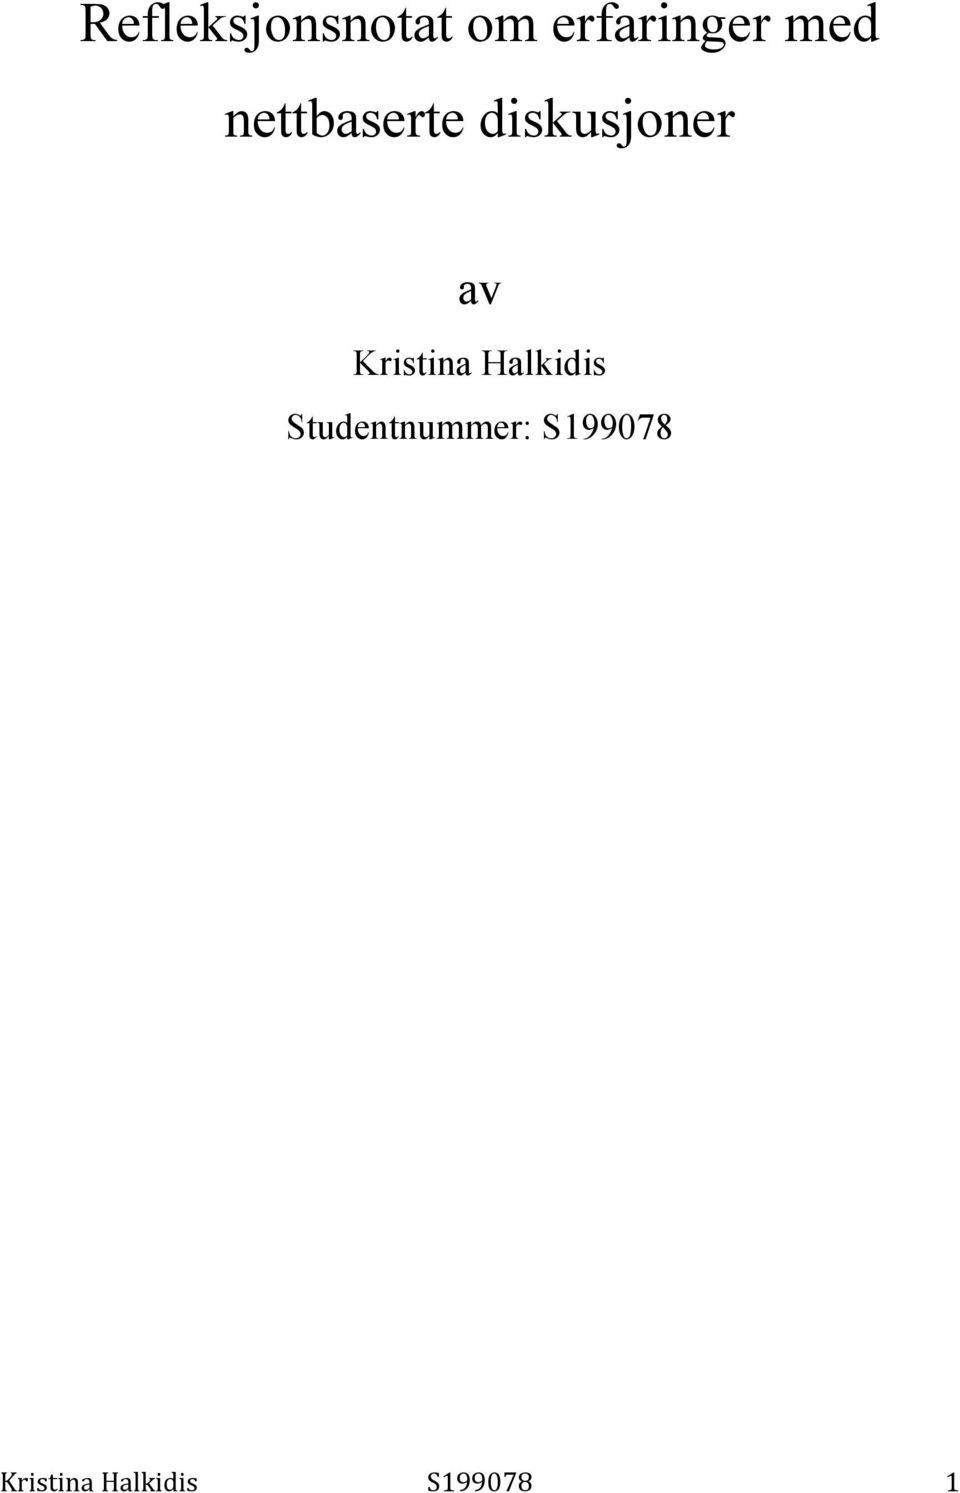 Kristina Halkidis Studentnummer: